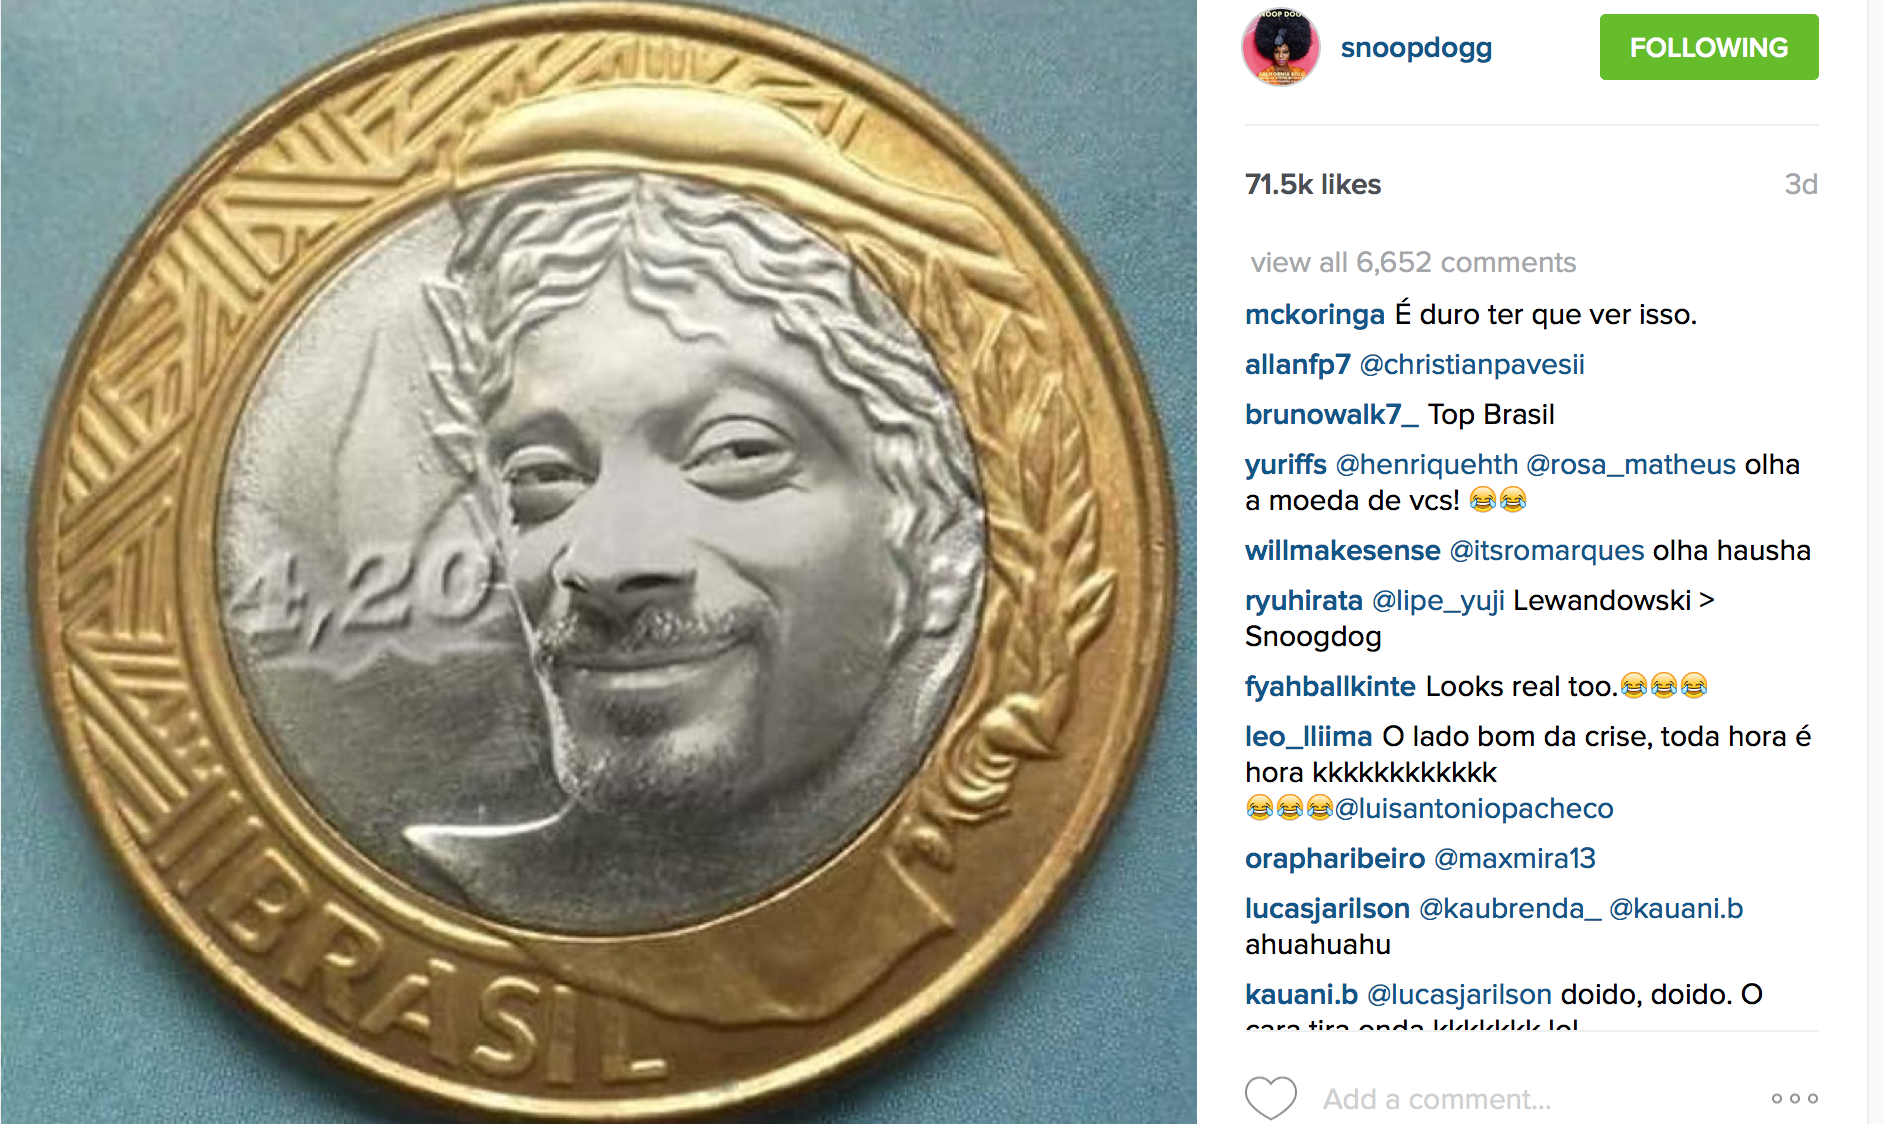 Snoop Dogg entrega vinda ao Brasil no Instagram. E ainda zoa, claro